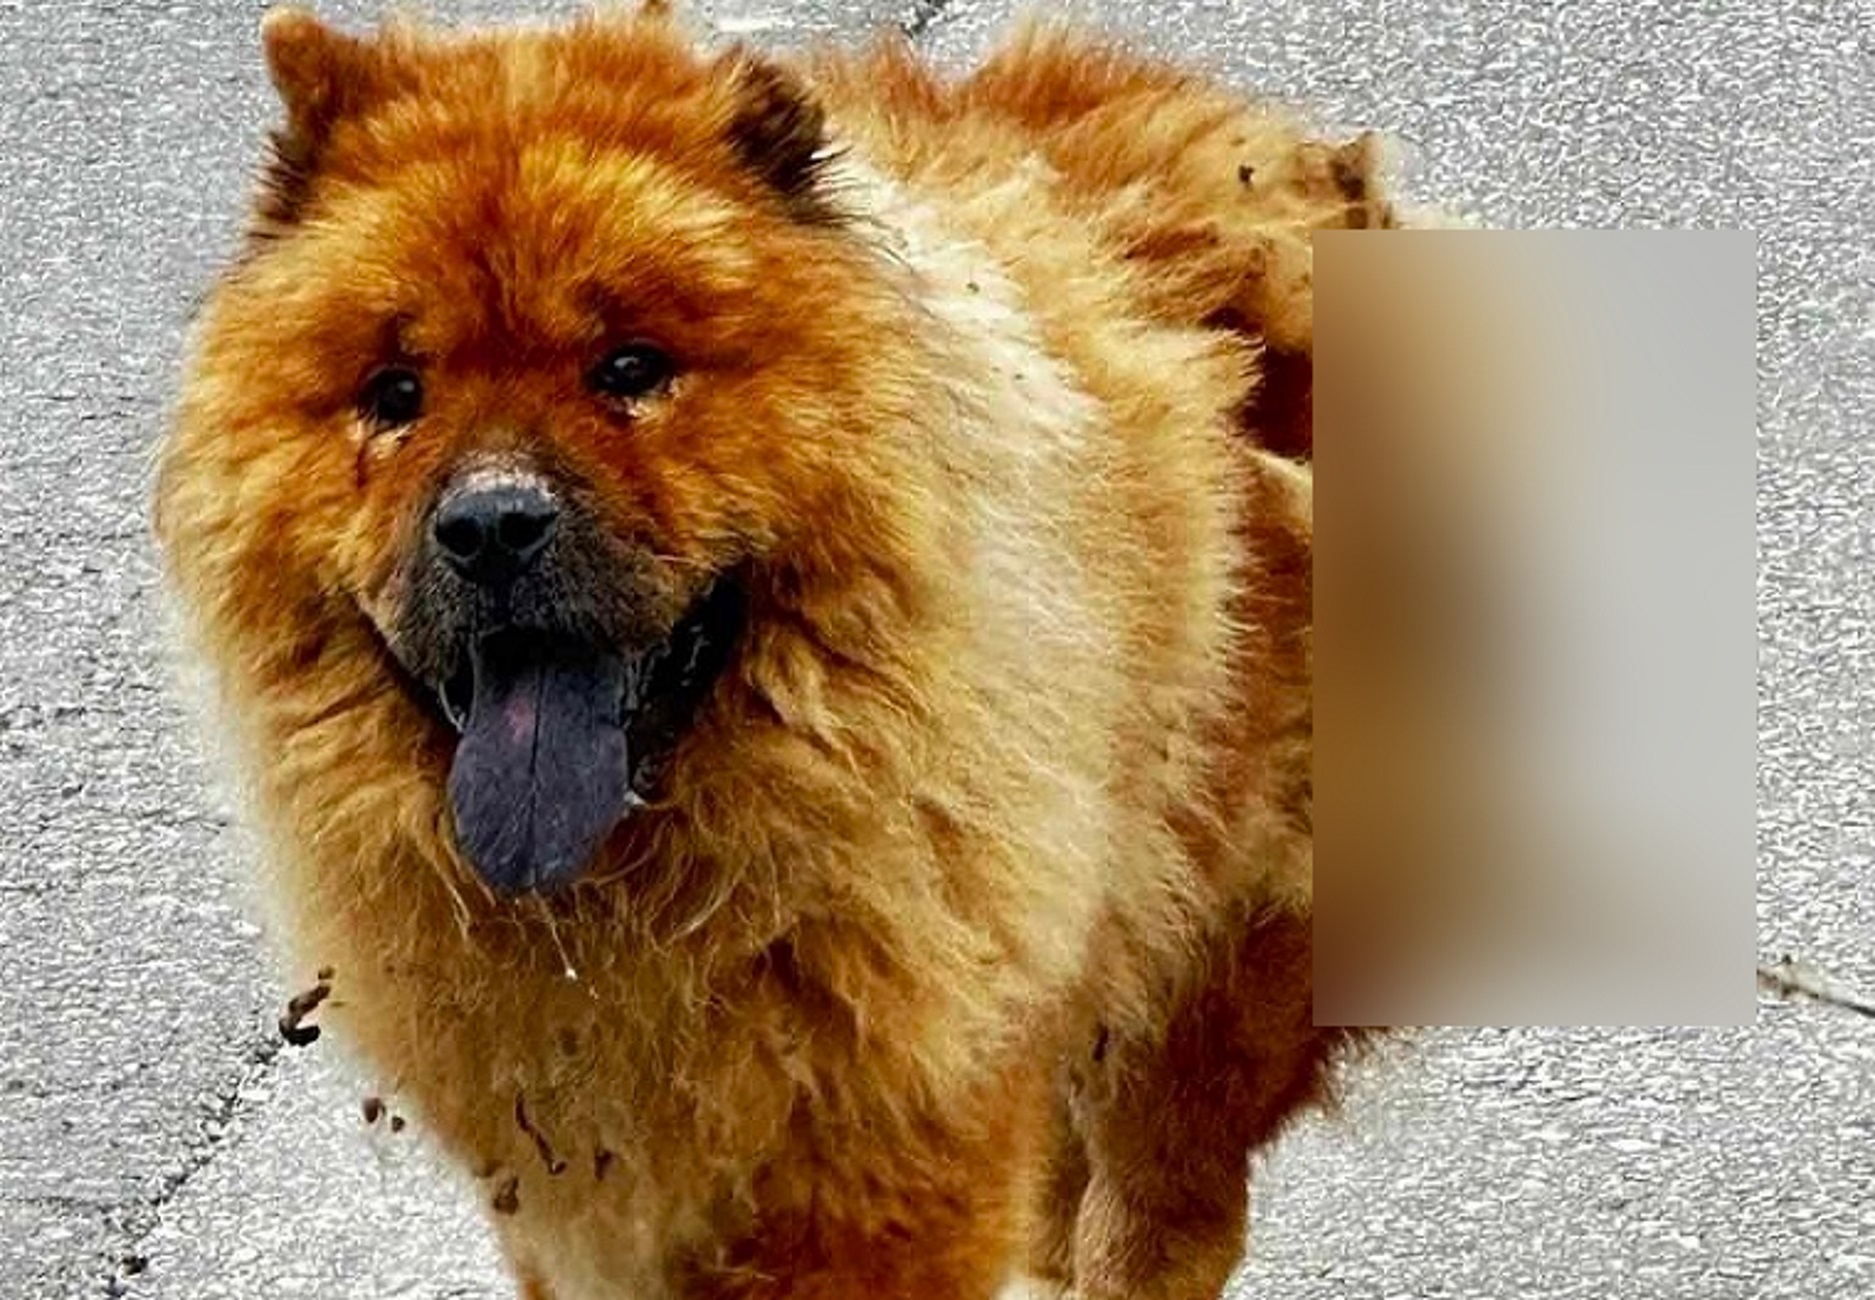 Χανιά: Κακοποιήθηκε σκύλος με καυστικό υγρό – Του προκάλεσαν έγκαυμα στην πλάτη